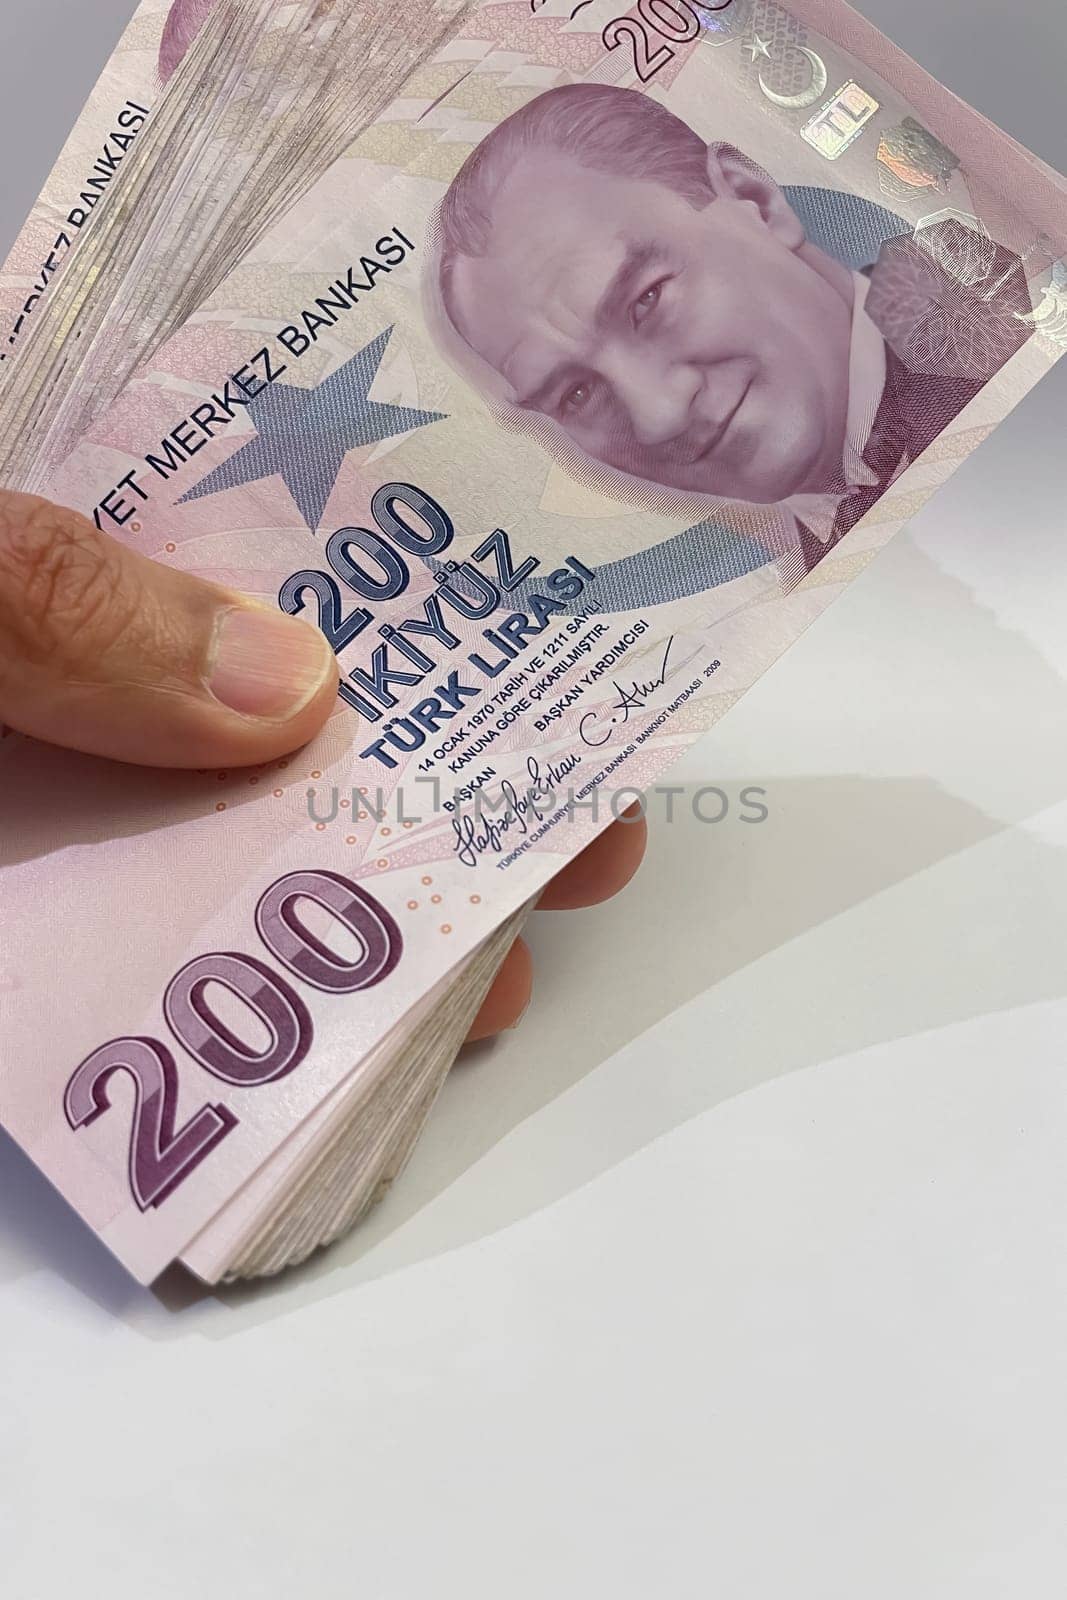 200 Turkish lira banknotes. Close-up. Financial concept. by yilmazsavaskandag